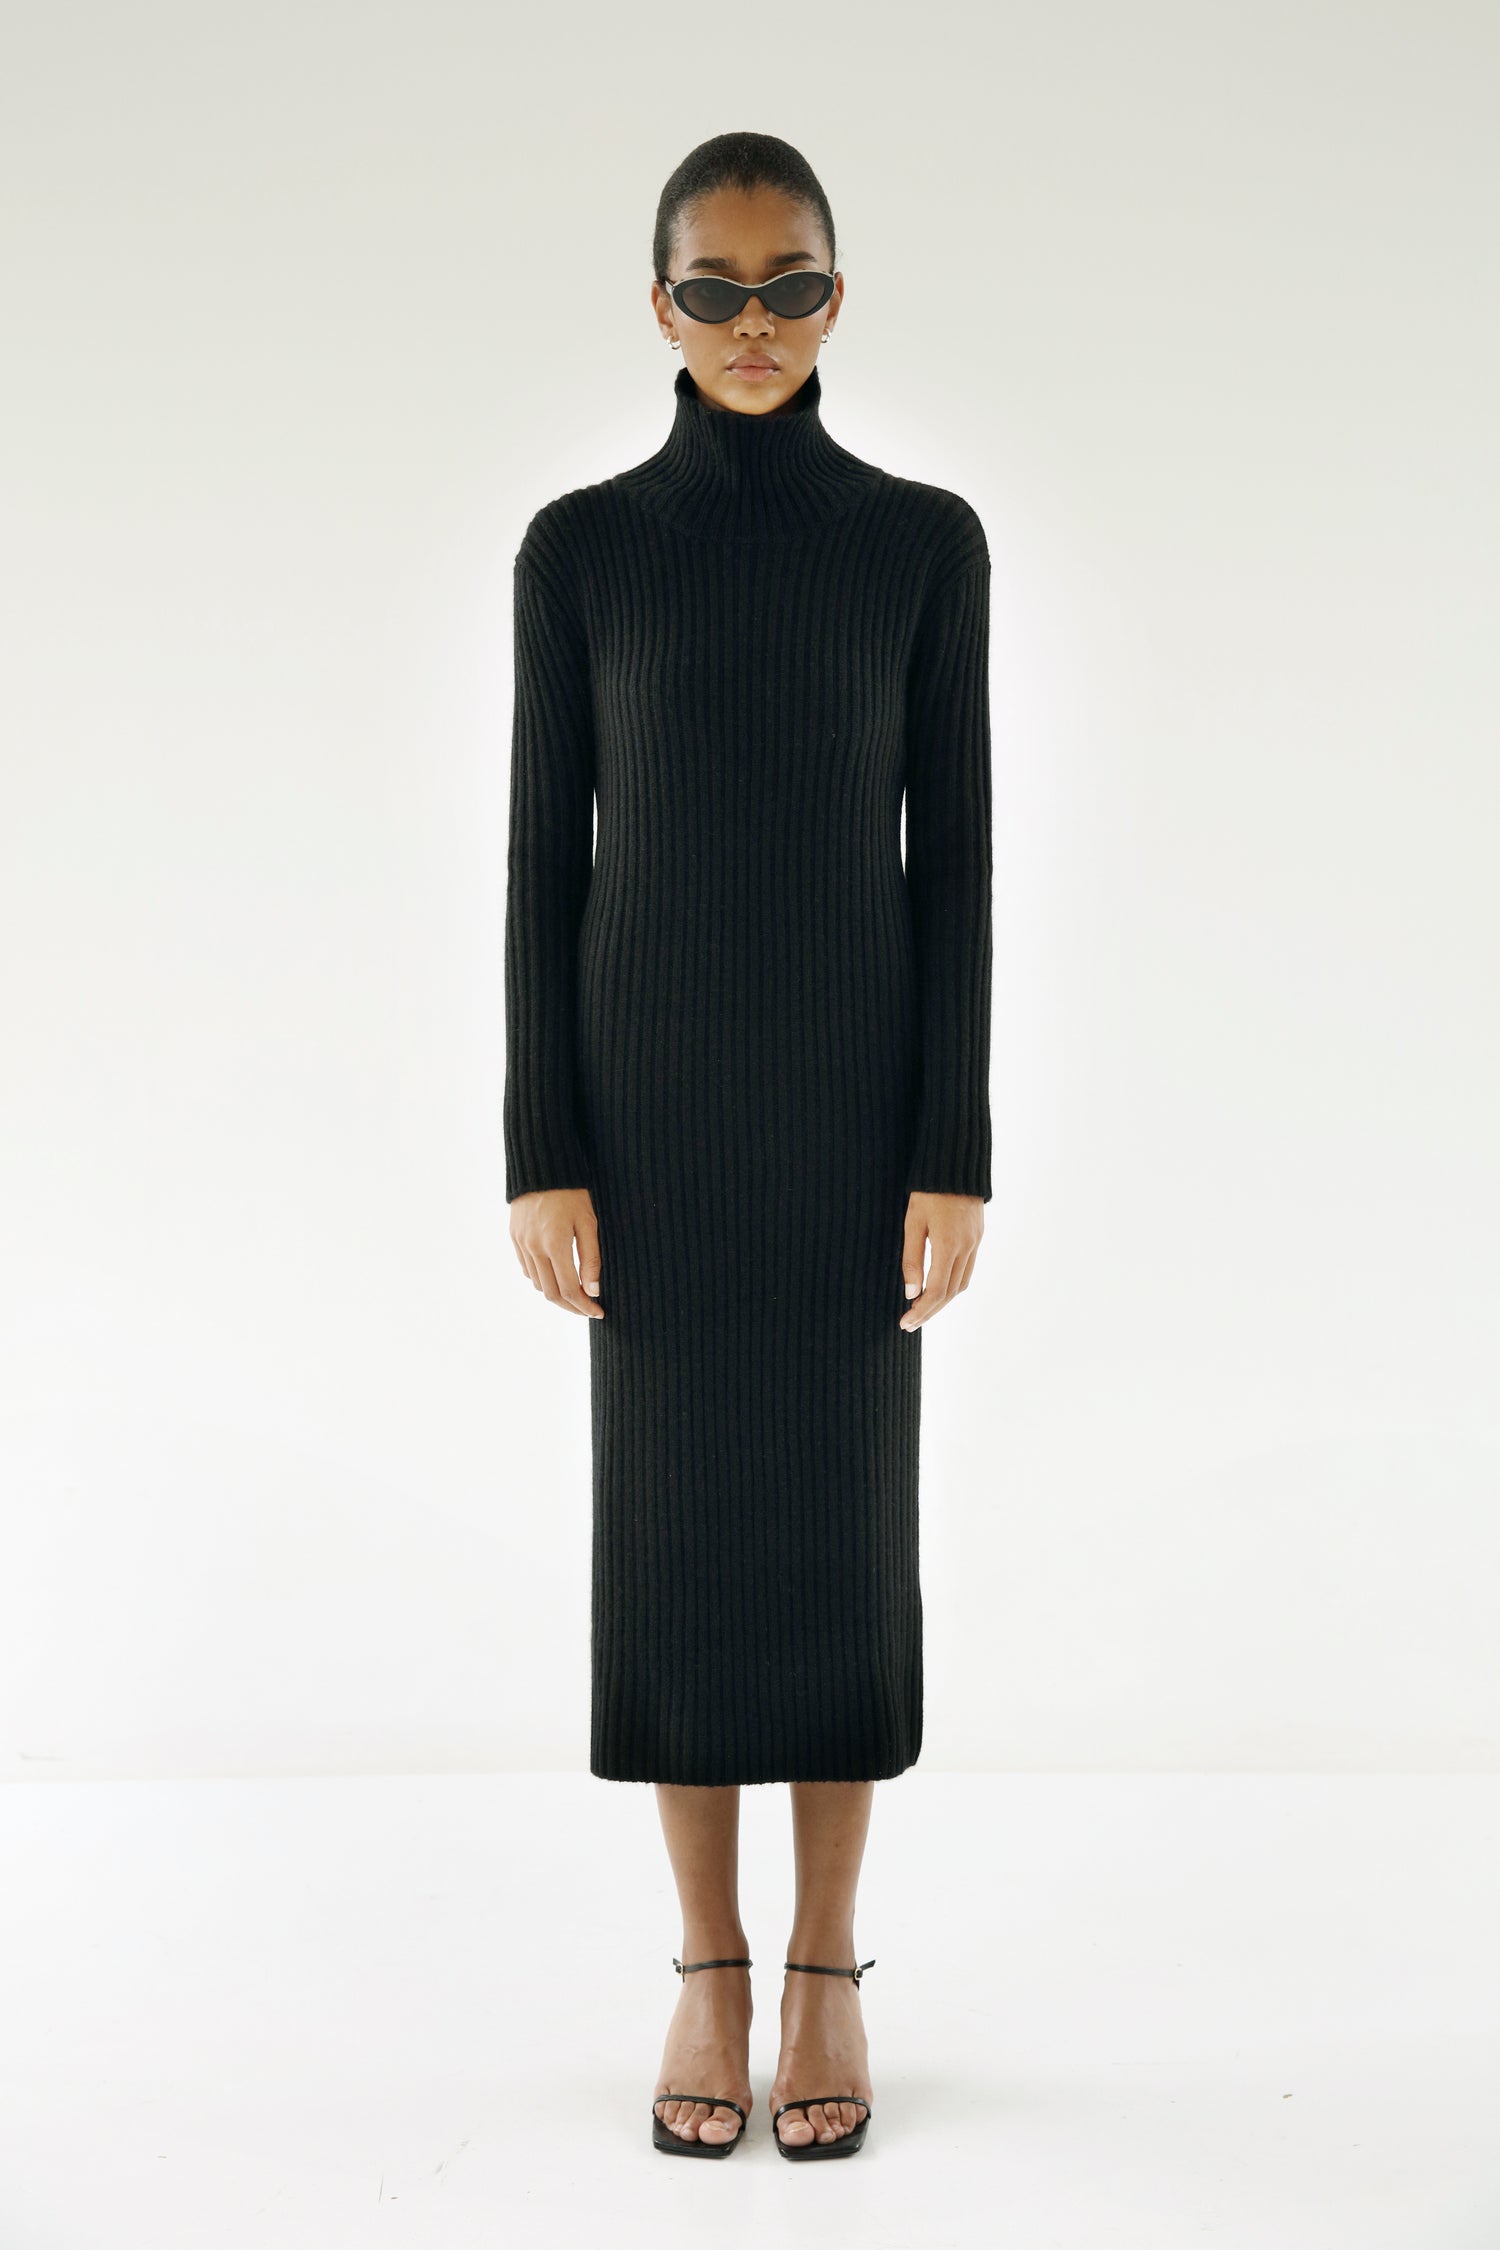 Sue Rib Knit Dress, black – ALMADA LABEL